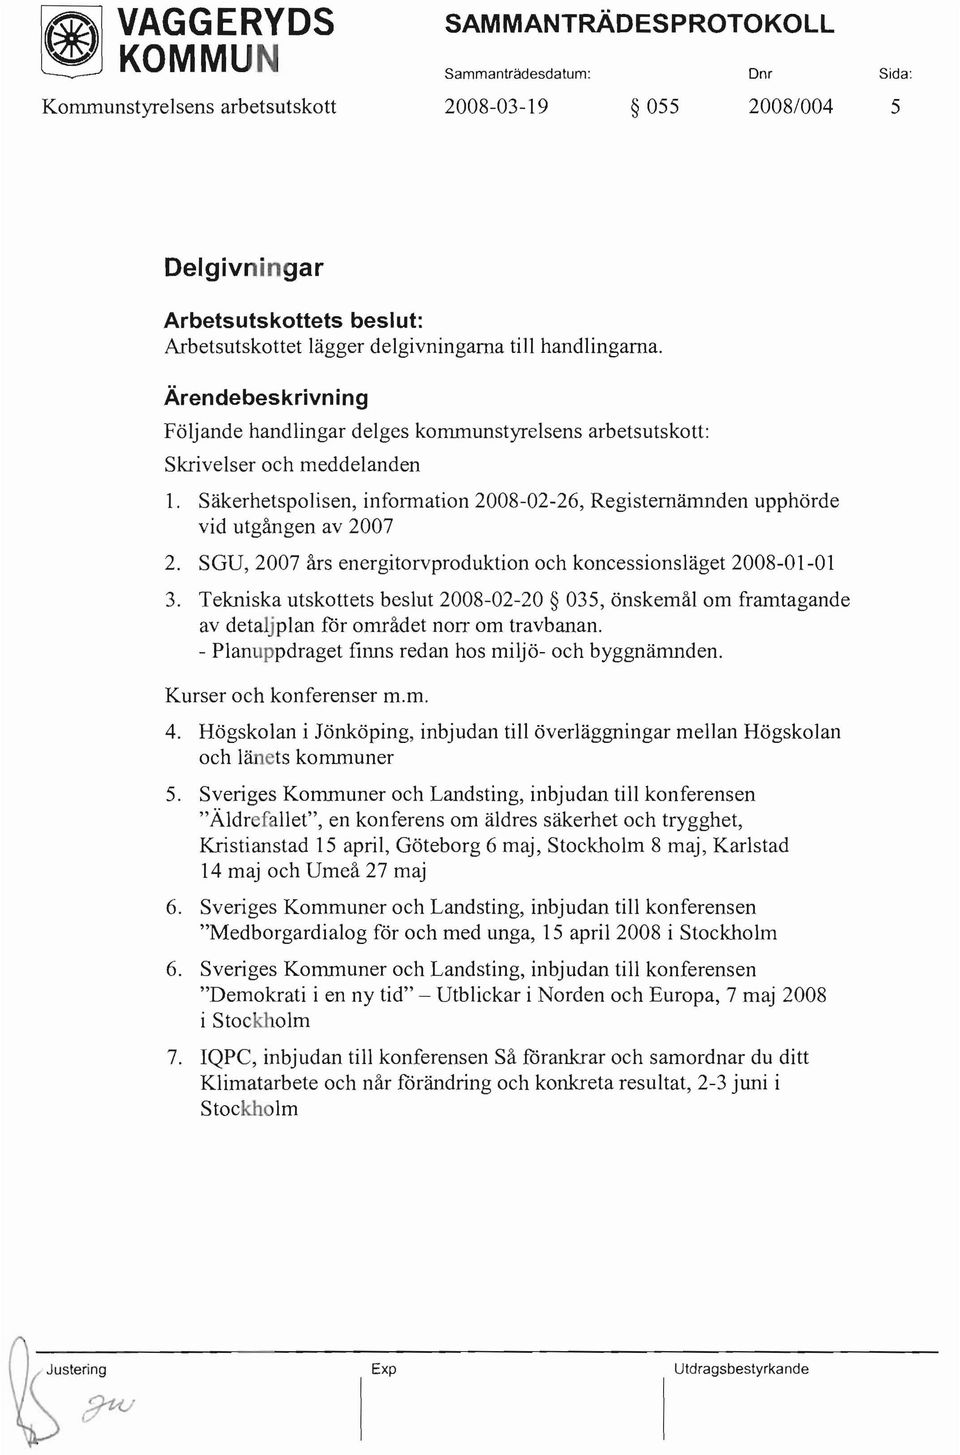 SGU, 2007 års energitorvproduktion och koncessionsläget 2008-01-01 3. Tekniska utskottets beslut 2008-02-20 035, önskemål om framtagande av detaljplan för området norr om travbanan.